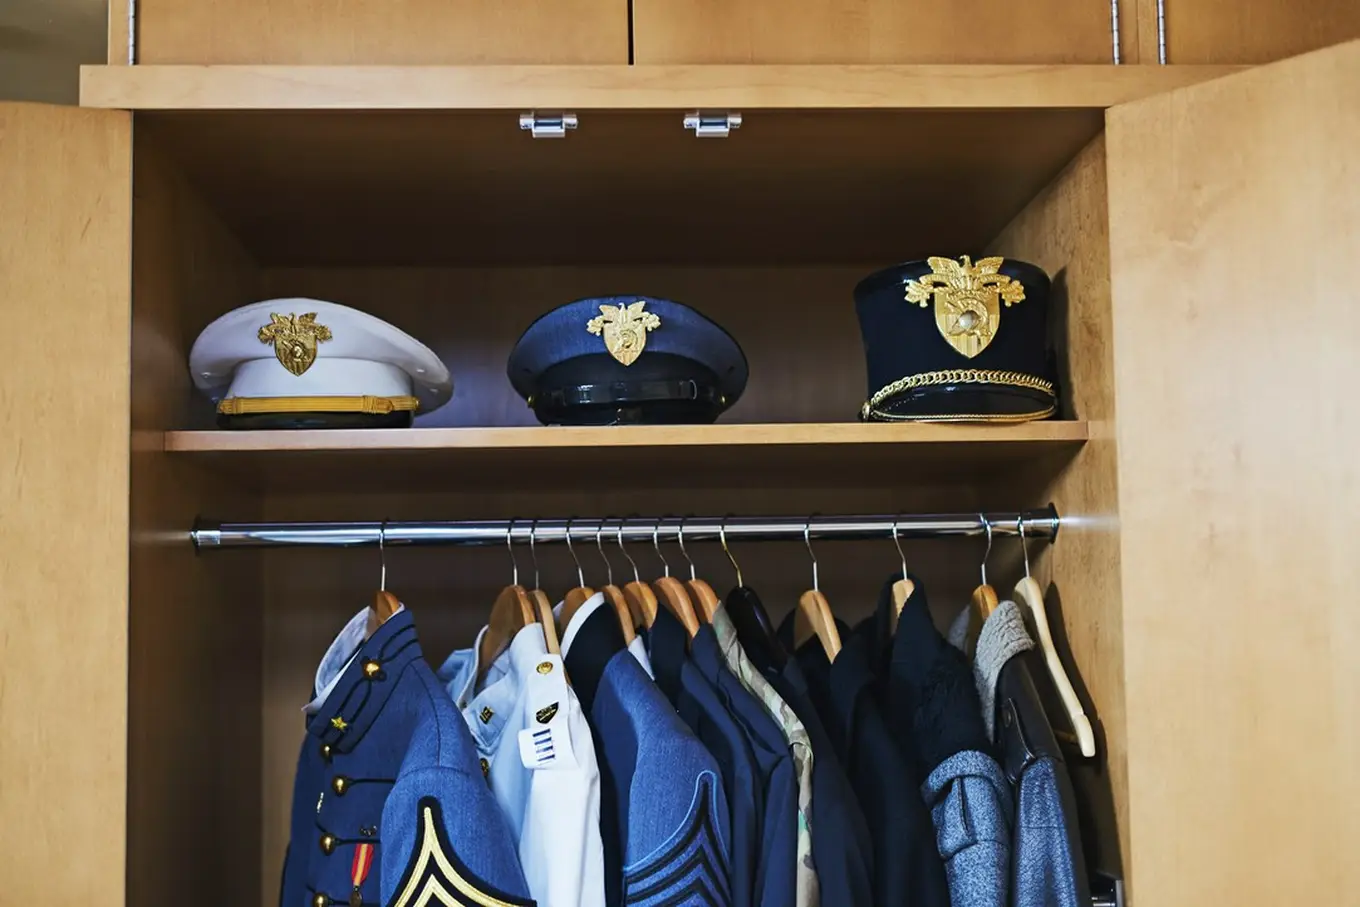 mundury w szafie